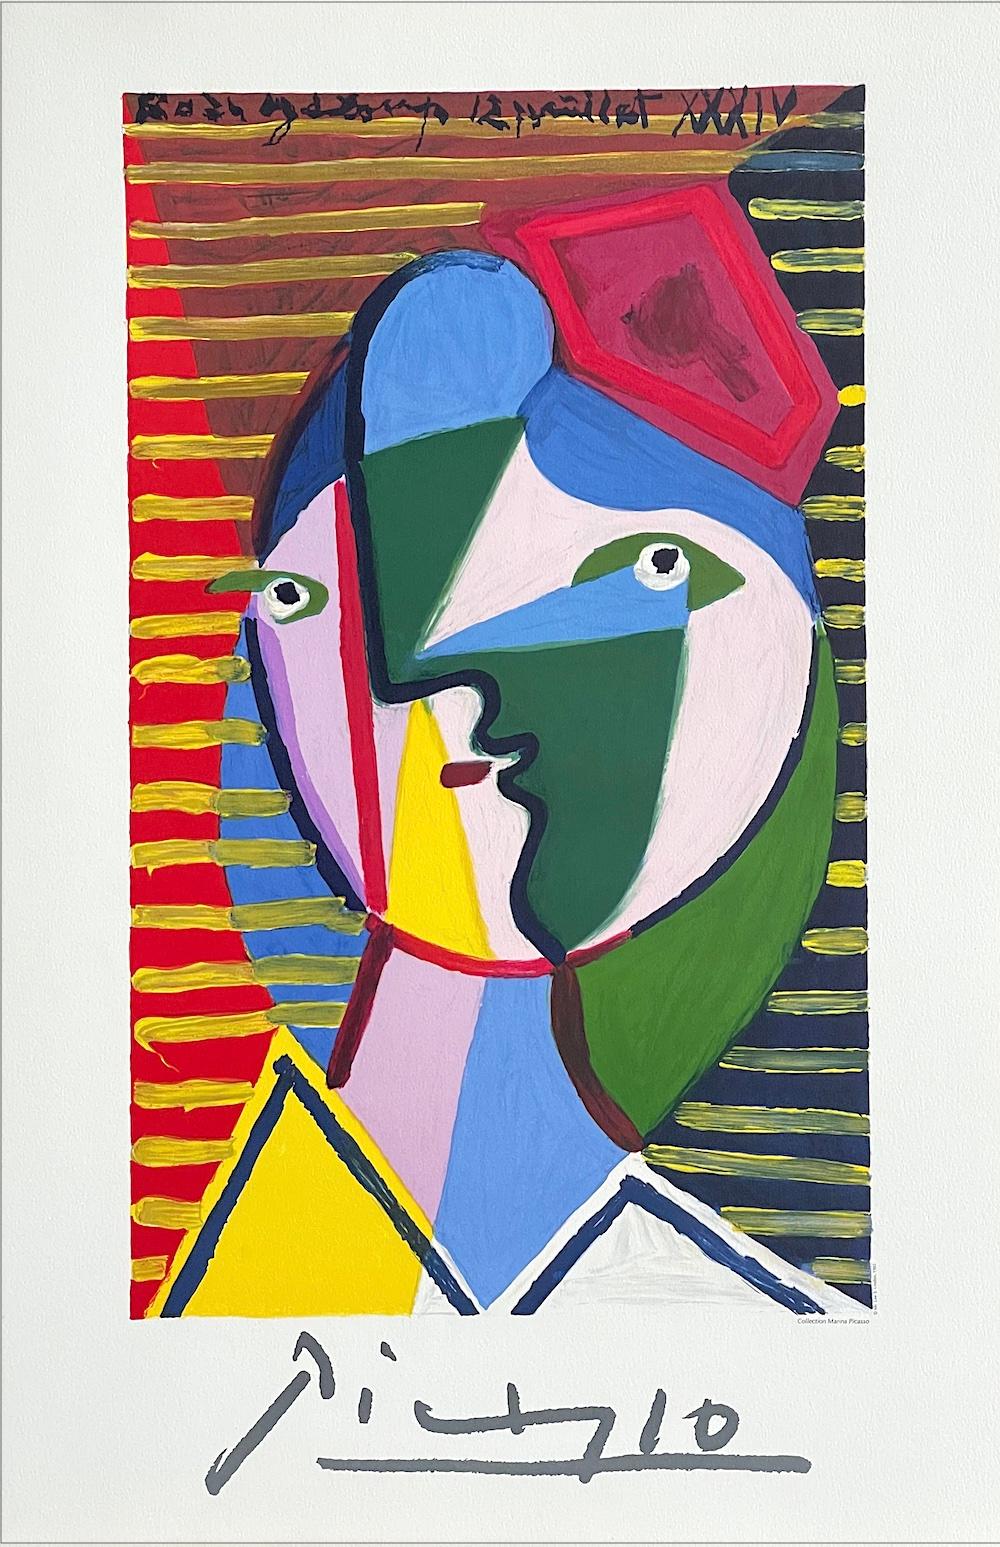 VISAGE DE FEMME SUR FOND RAYE Lithograph, Abstract Portrait, Round Face, Stripes